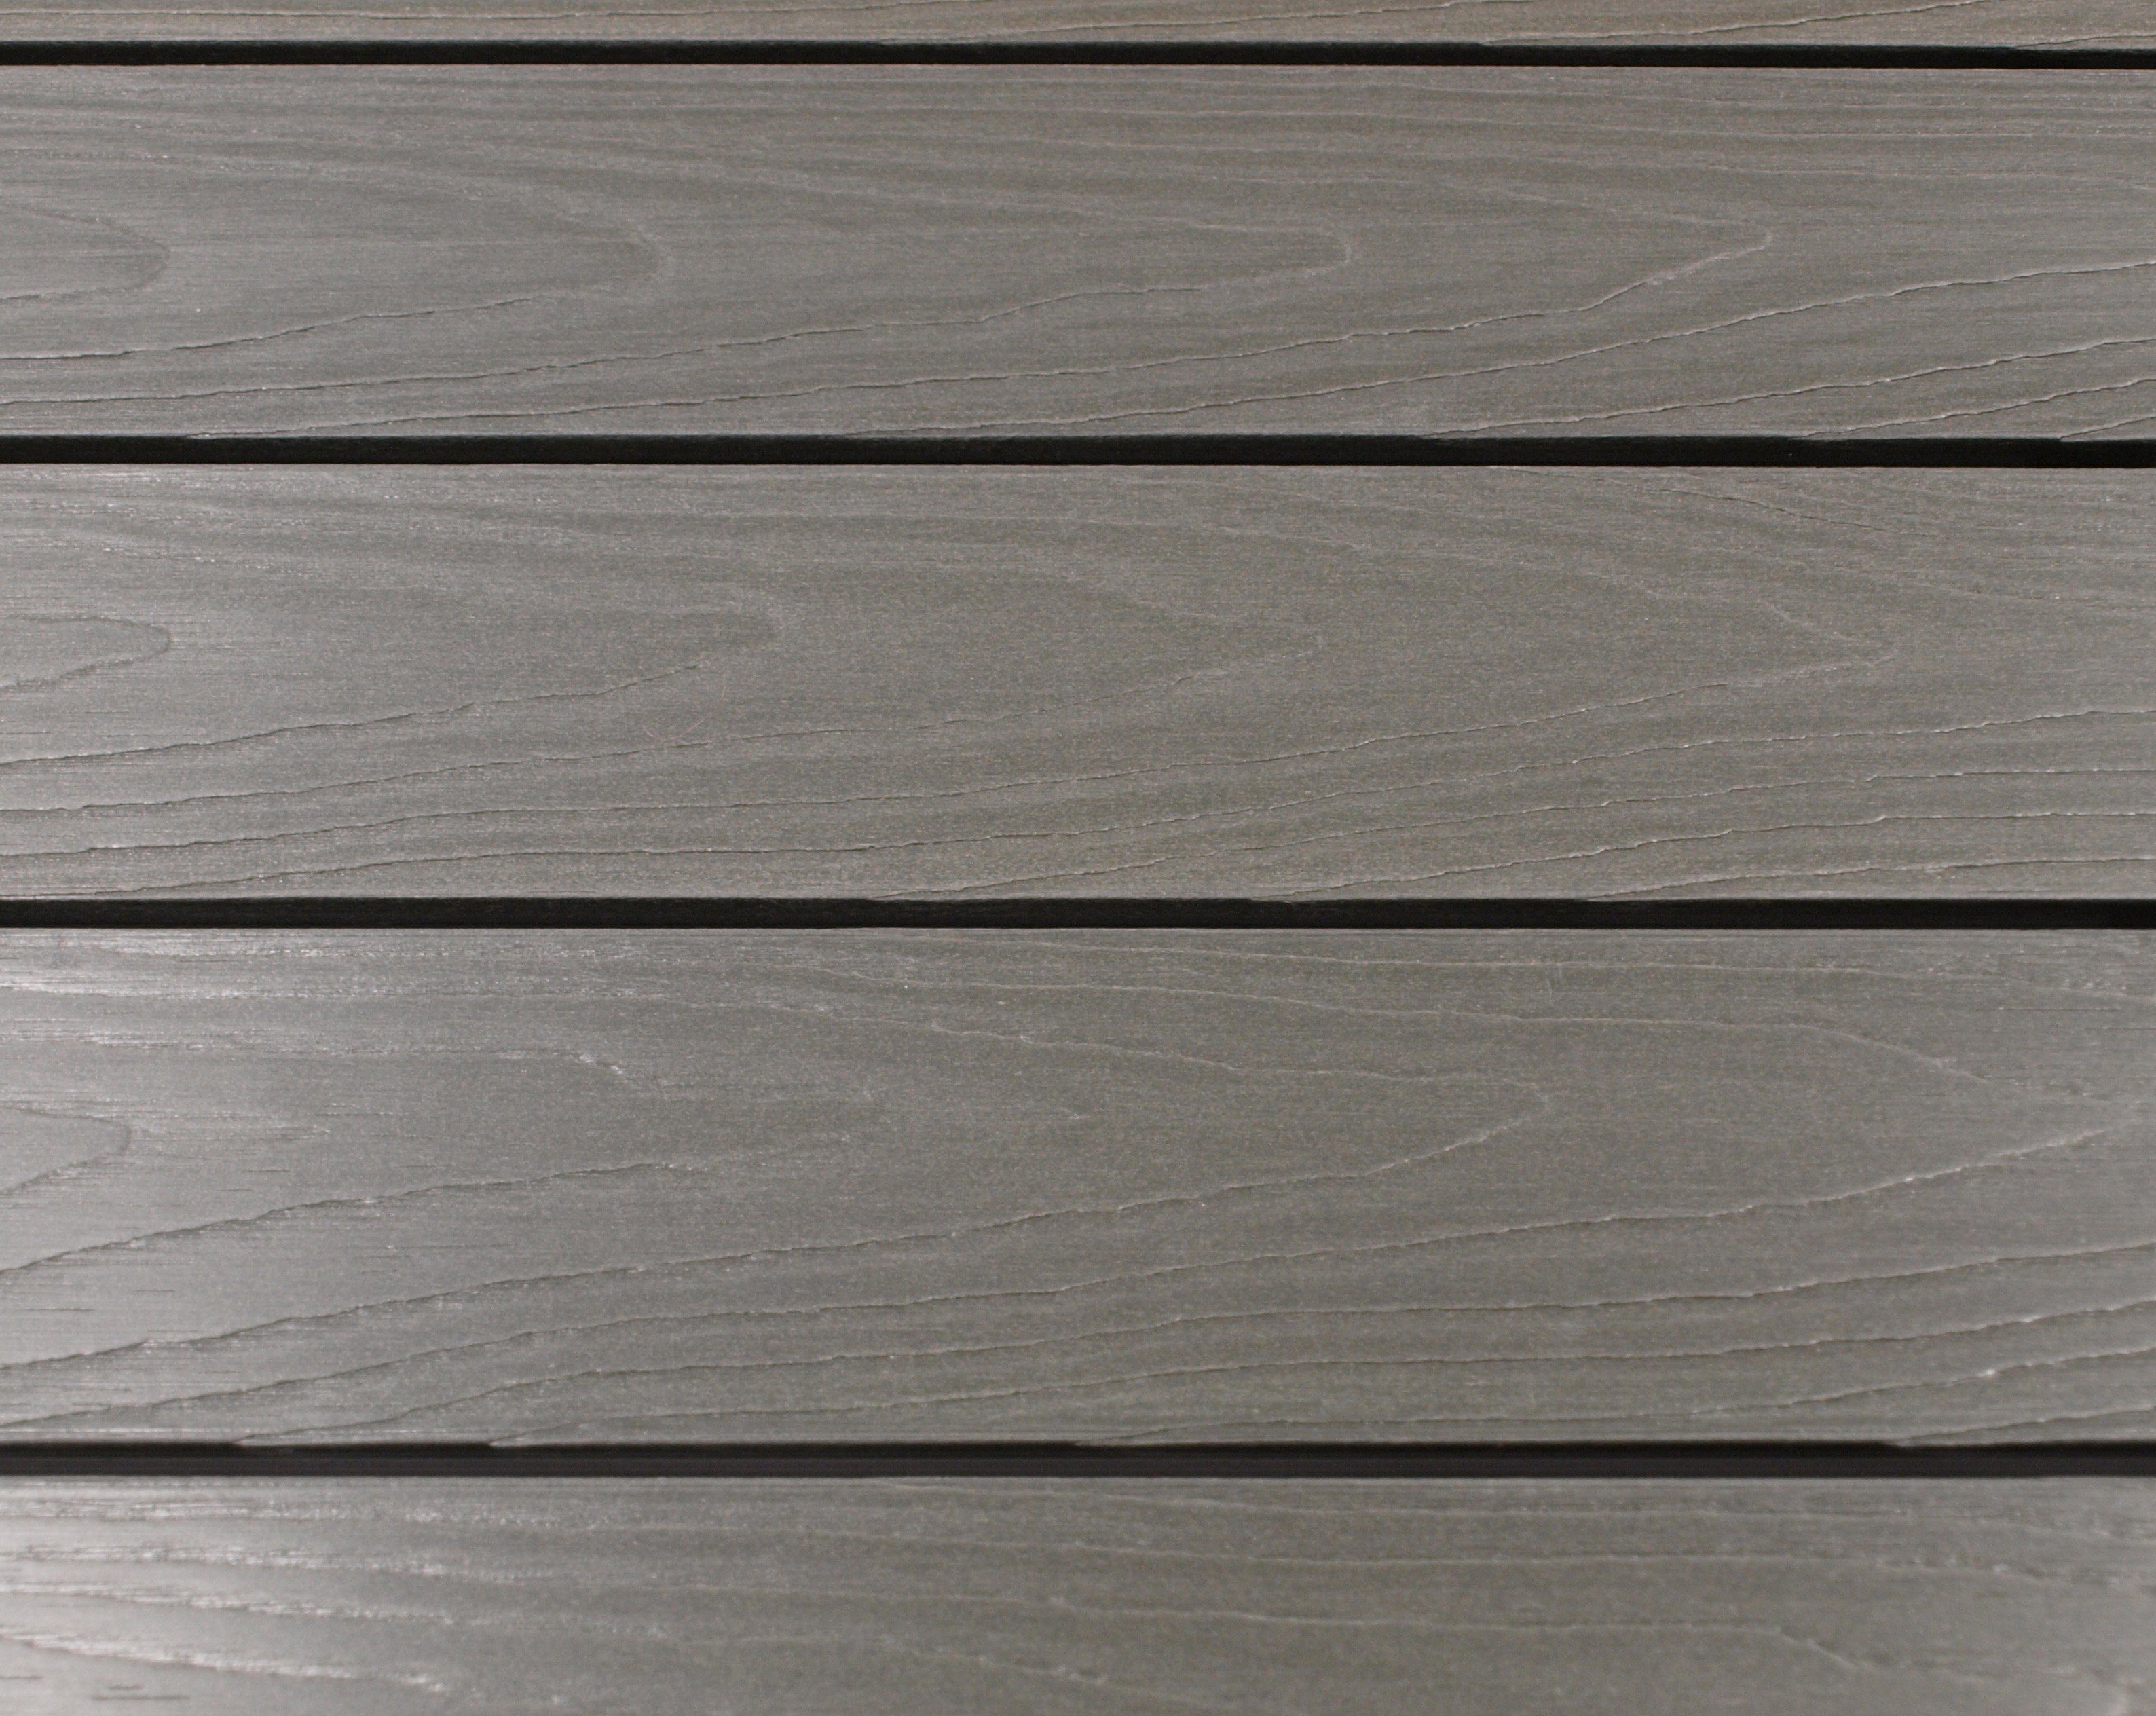 grau (1-St), quadratisch Gartentisch DEGAMO + Kunstholz silbergrau 70x70cm, Aluminium SORANO